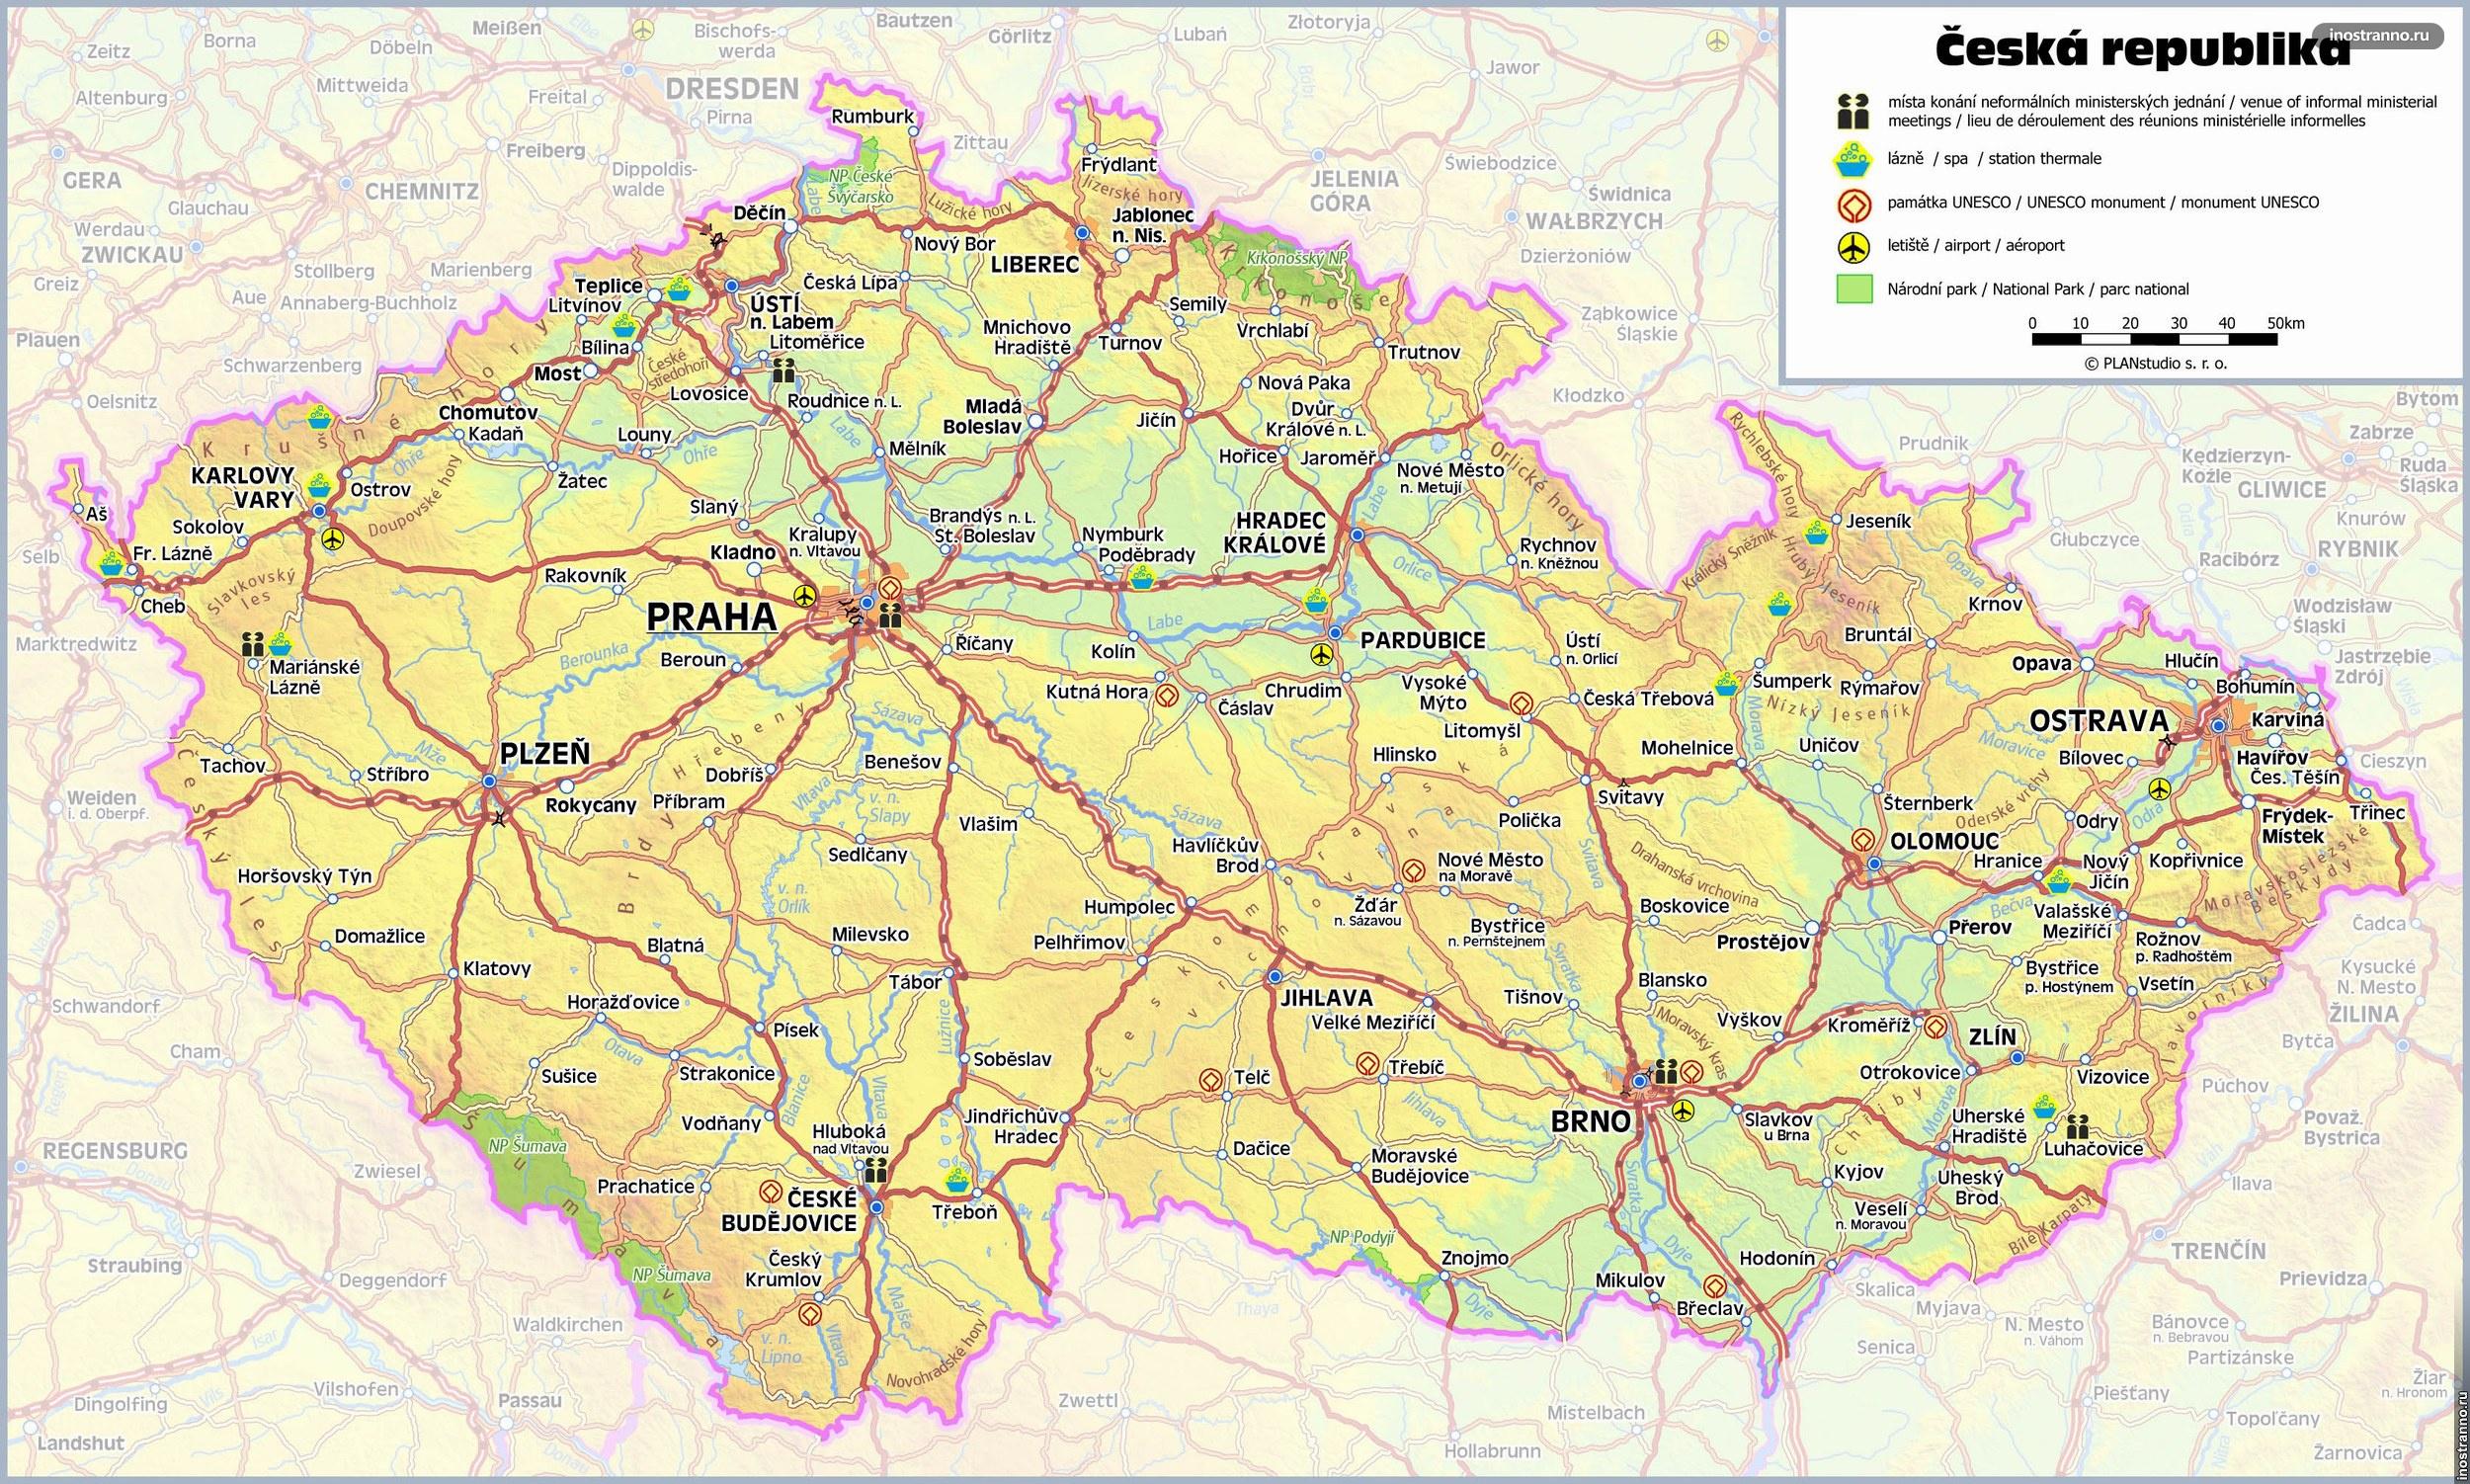 Подробная карта Чехии